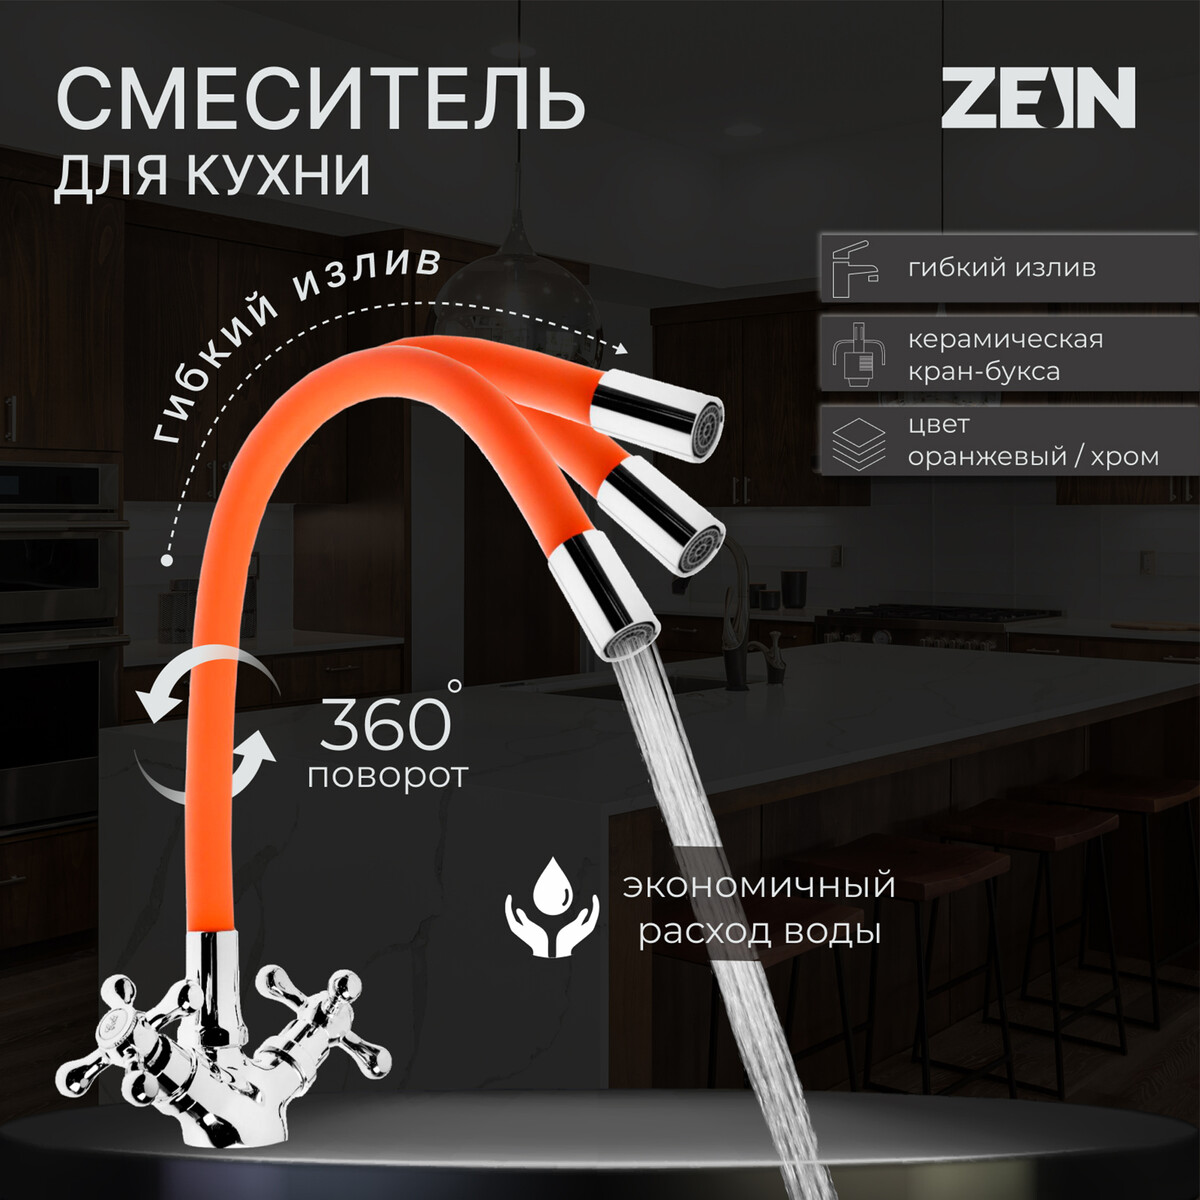 Смеситель для кухни zein z2107, двухвентильный, силиконовый излив, оранжевый/хром смеситель для кухни zein z2075g силиконовый излив картридж 40 мм латунь серый хром